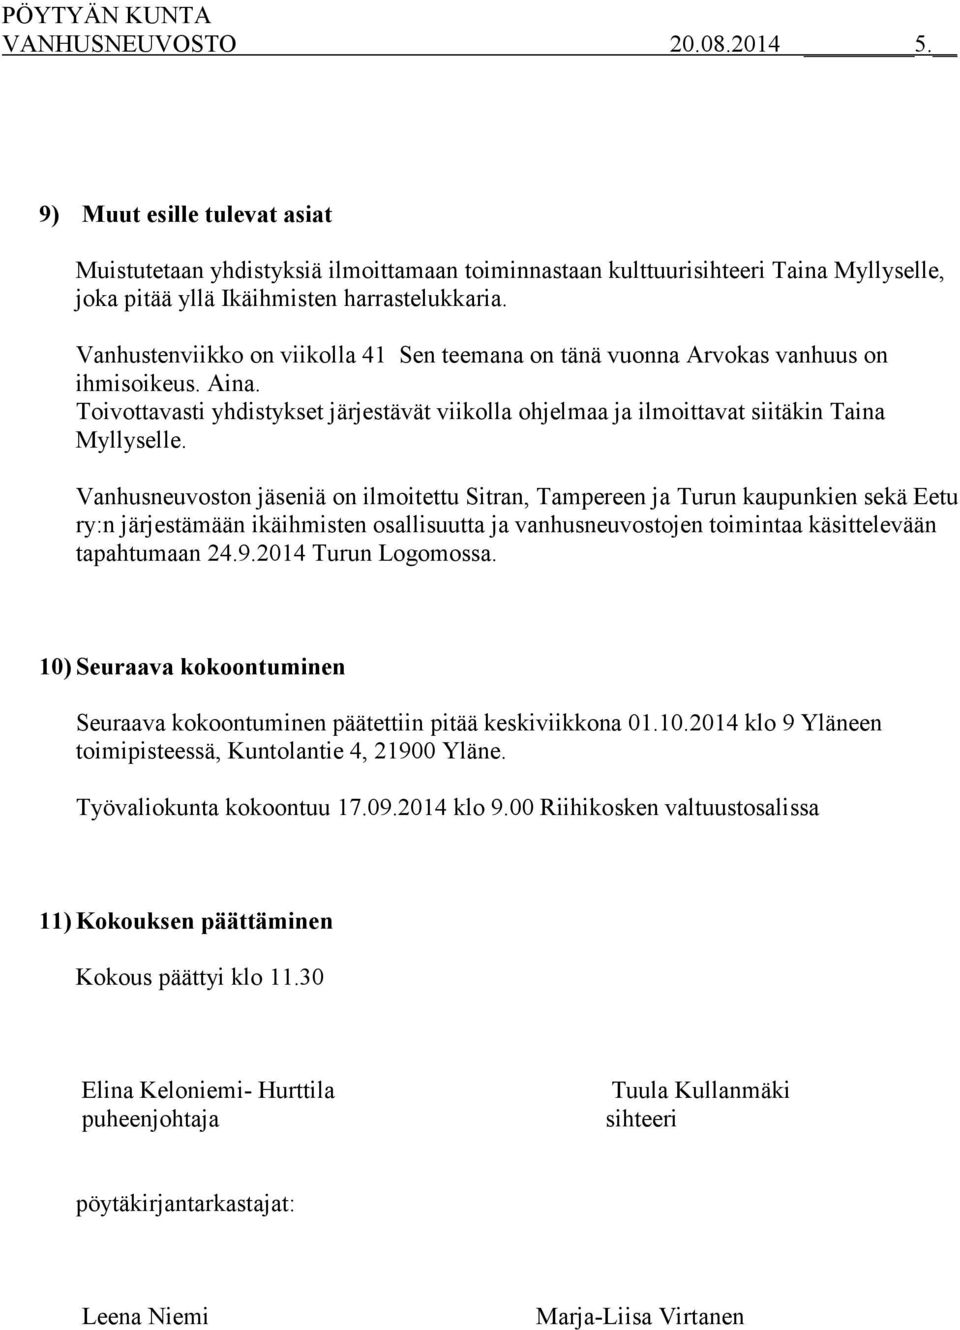 Vanhusneuvoston jäseniä on ilmoitettu Sitran, Tampereen ja Turun kaupunkien sekä Eetu ry:n järjestämään ikäihmisten osallisuutta ja vanhusneuvostojen toimintaa käsittelevään tapahtumaan 24.9.